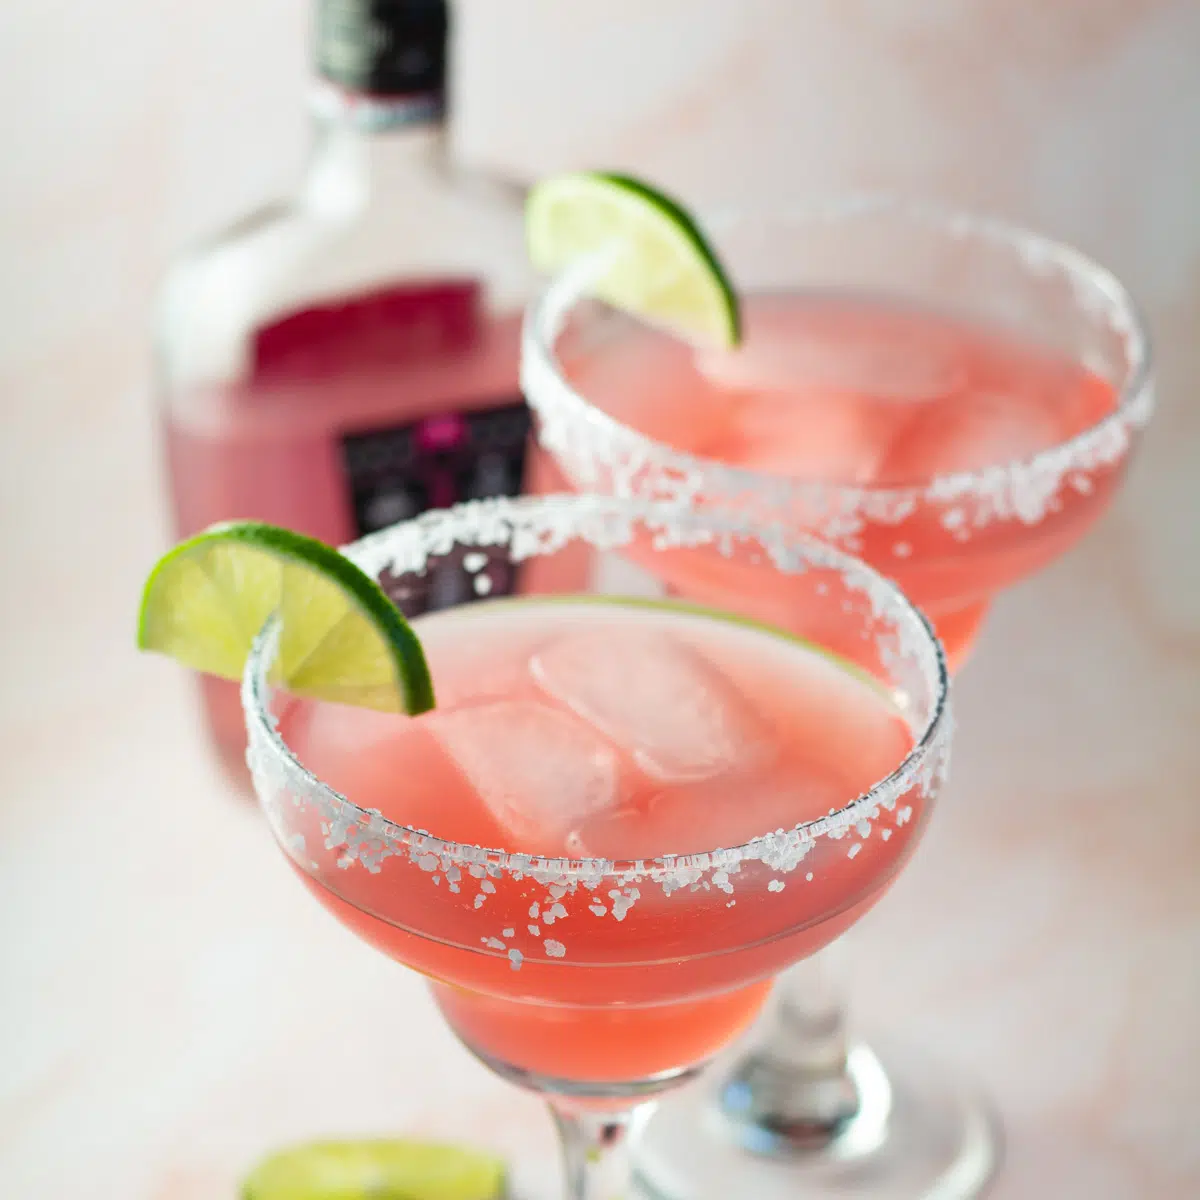 Розовую водку «маргарита» подают в стакане «маргарита» с долькой лимона по ободку.